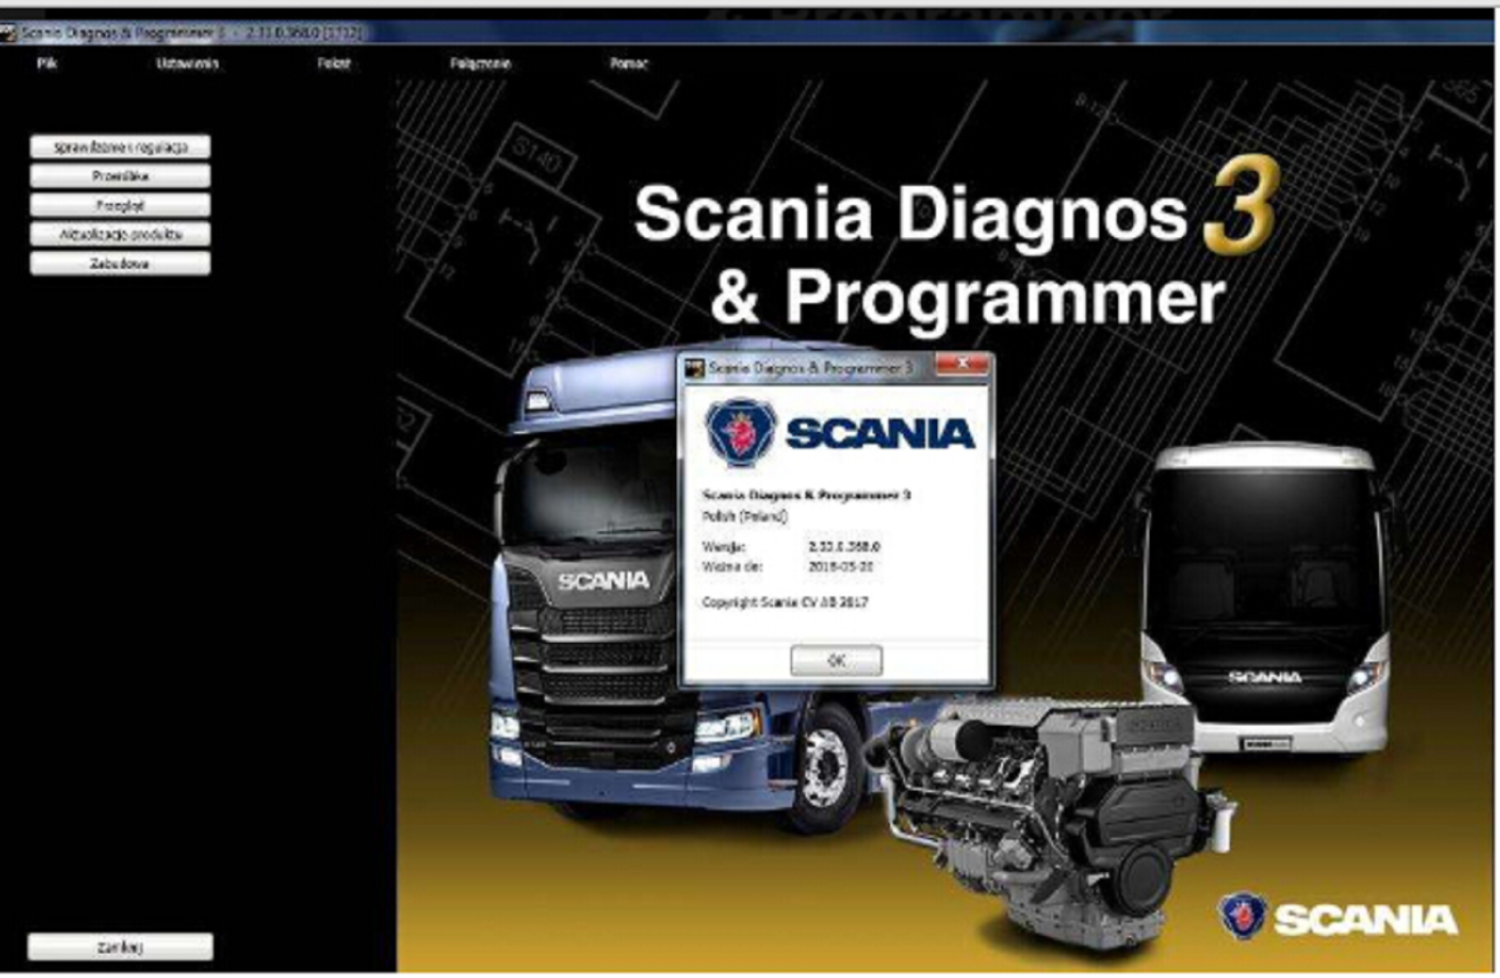 scania spd3 v2.50.1 12.2021 for truck/bus diagnosis programmer software+keygen